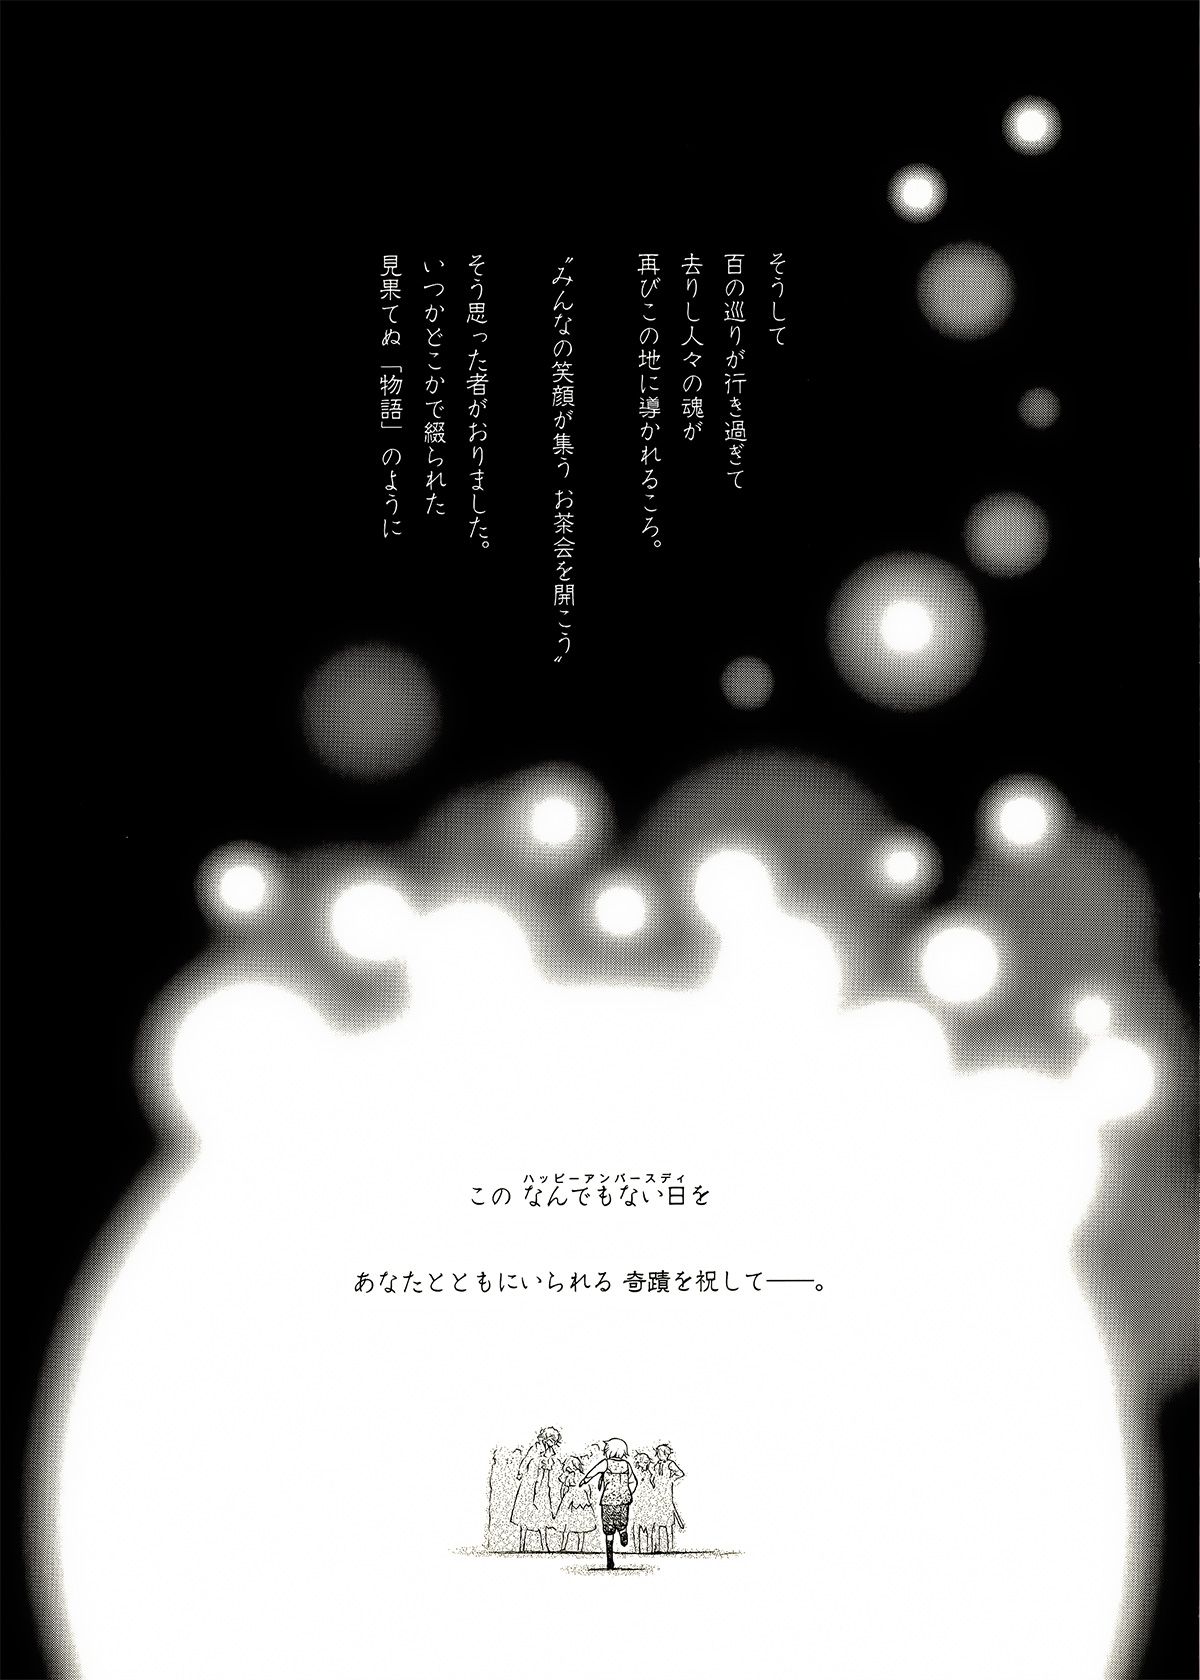 Pandora Hearts Guidebook 24+1: Last Dance パンドラハーツ オフィシャルガイド 24 + 1 ~Last Dance! 15